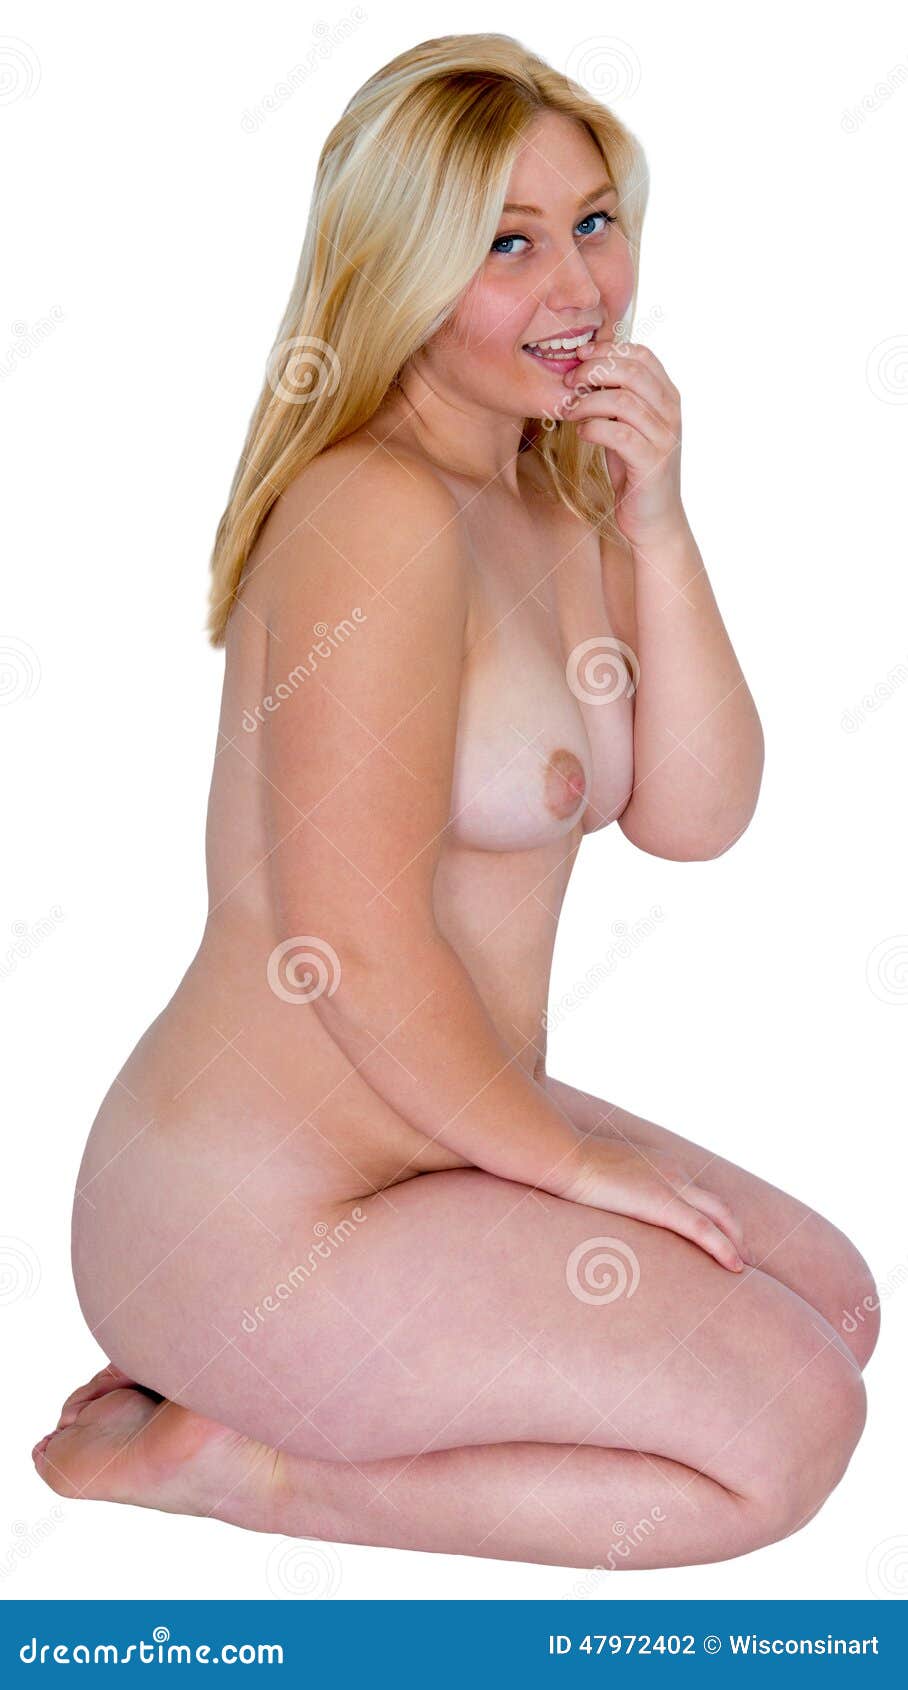 Blond women nude